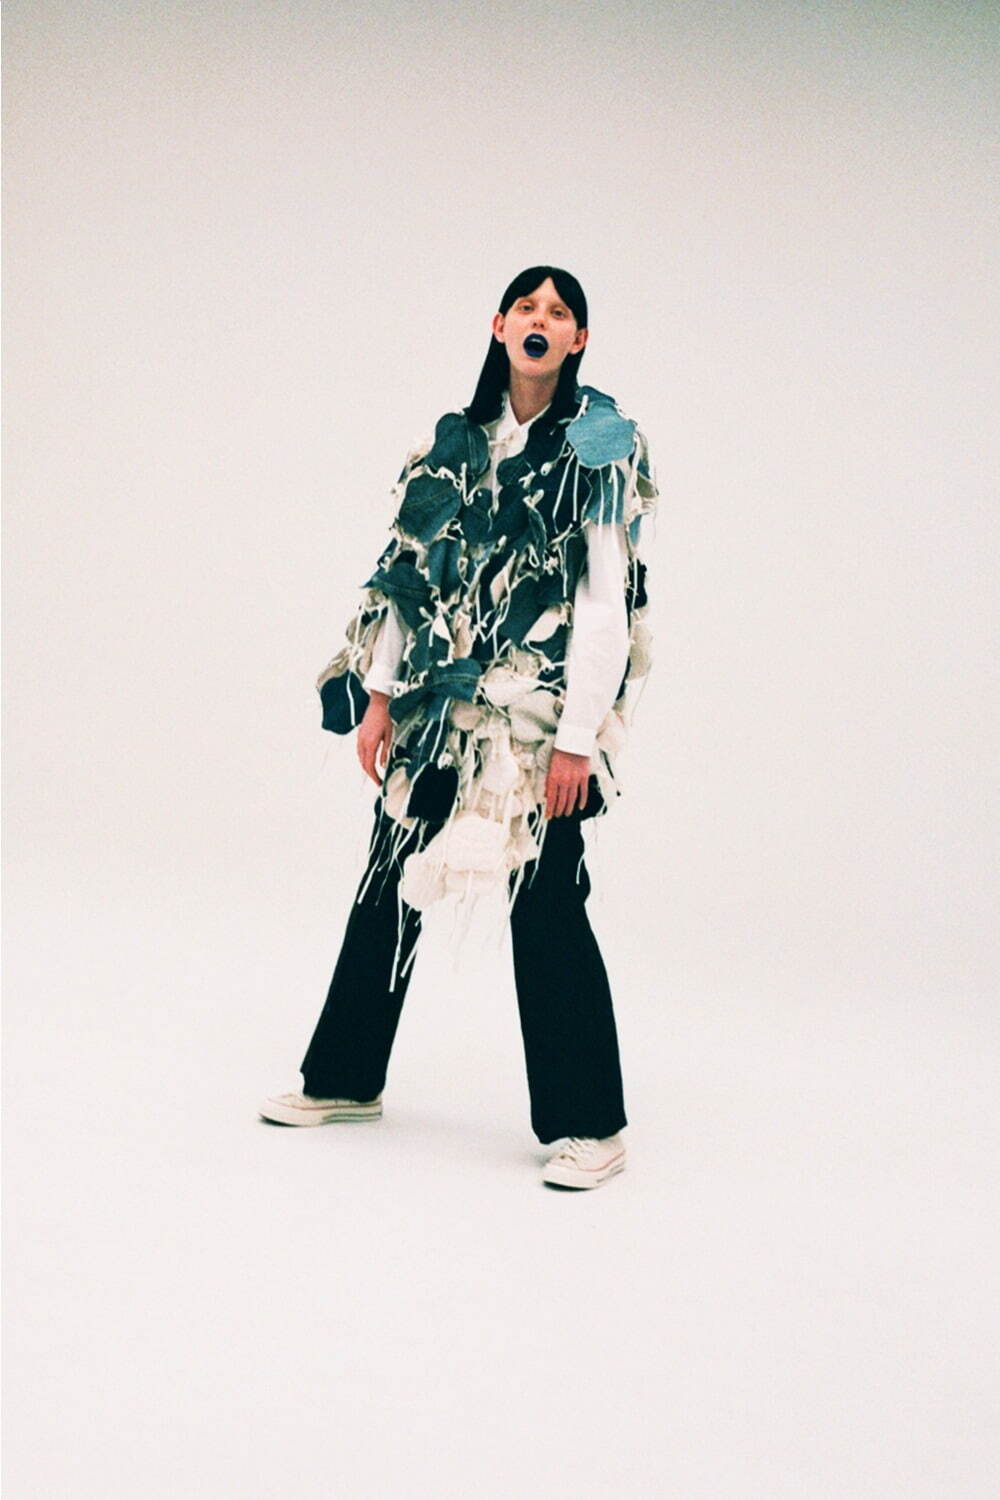 ナオキトミヅカ 21年秋冬コレクション 繋がり 連なり 進化する服 ファッションプレス